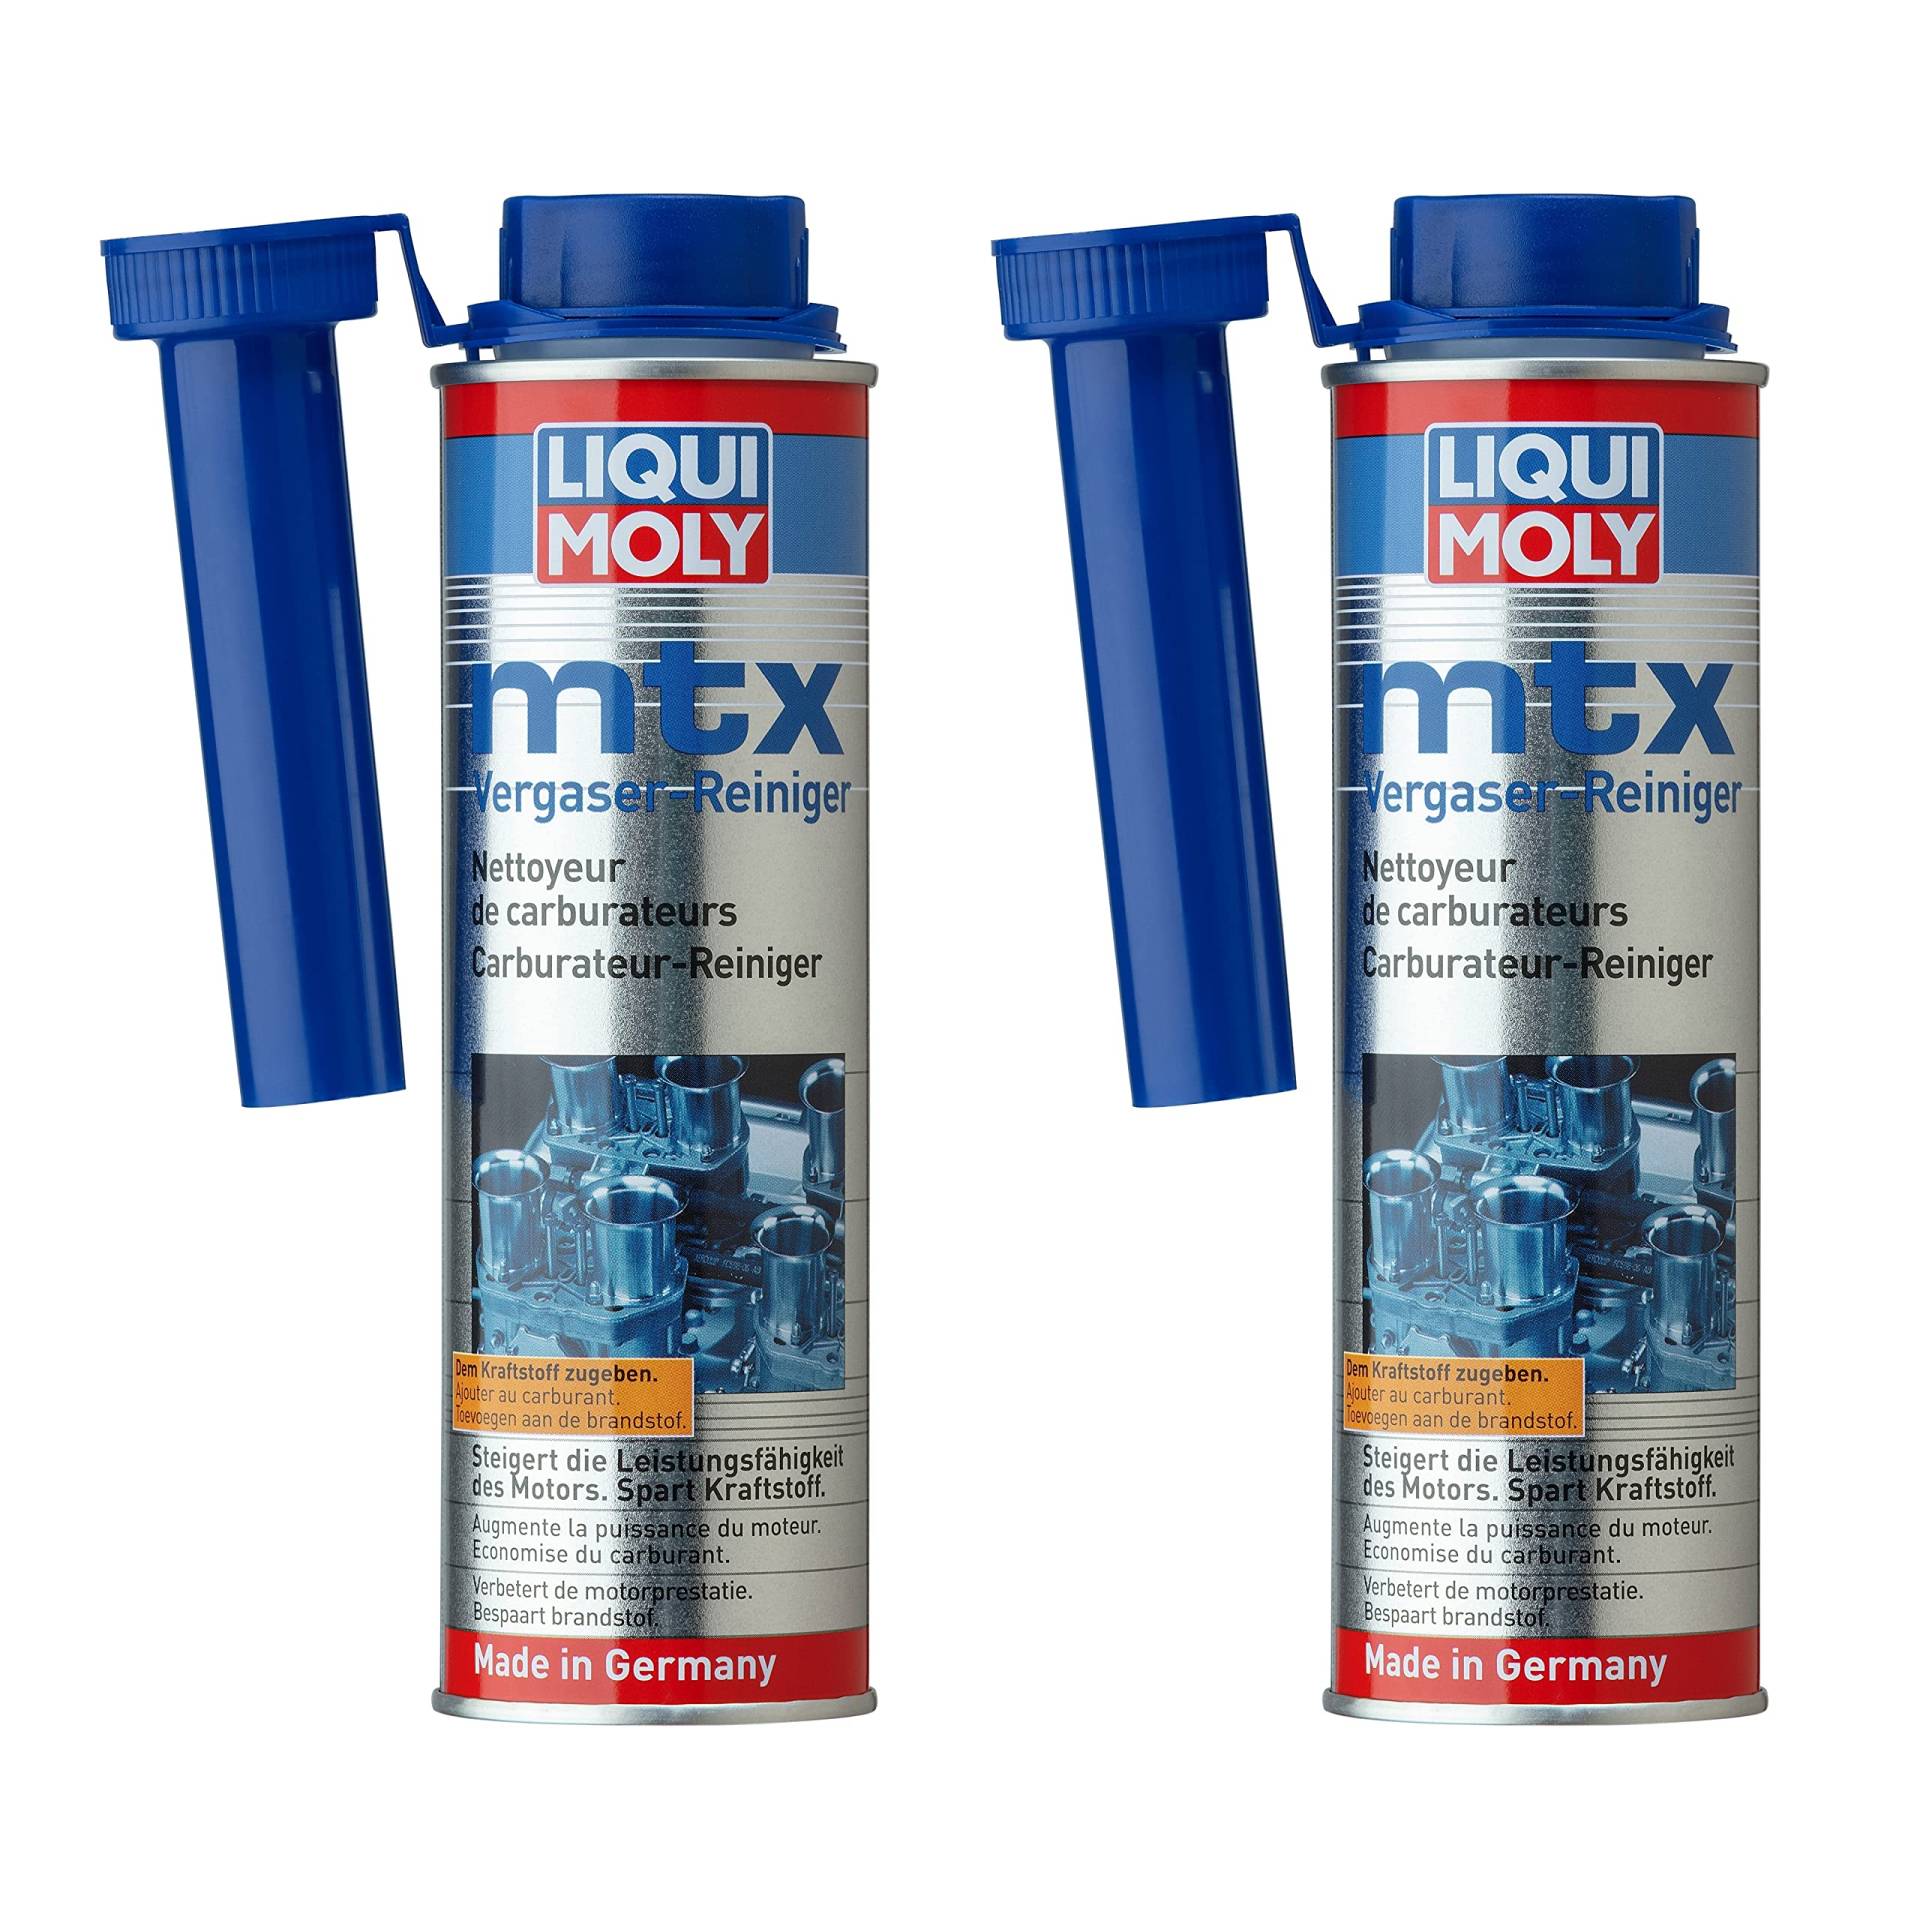 Liqui Moly 2X MTX Vergaserreiniger 300ml | Entfernt Ablagerungen im Vergaser, an Ventilen, Zündkerzen sowie im Brennraum und verhindert Neubildung | Kraftstoff Additiv für Benzin-Motoren | 2X 300ml von Liqui Moly